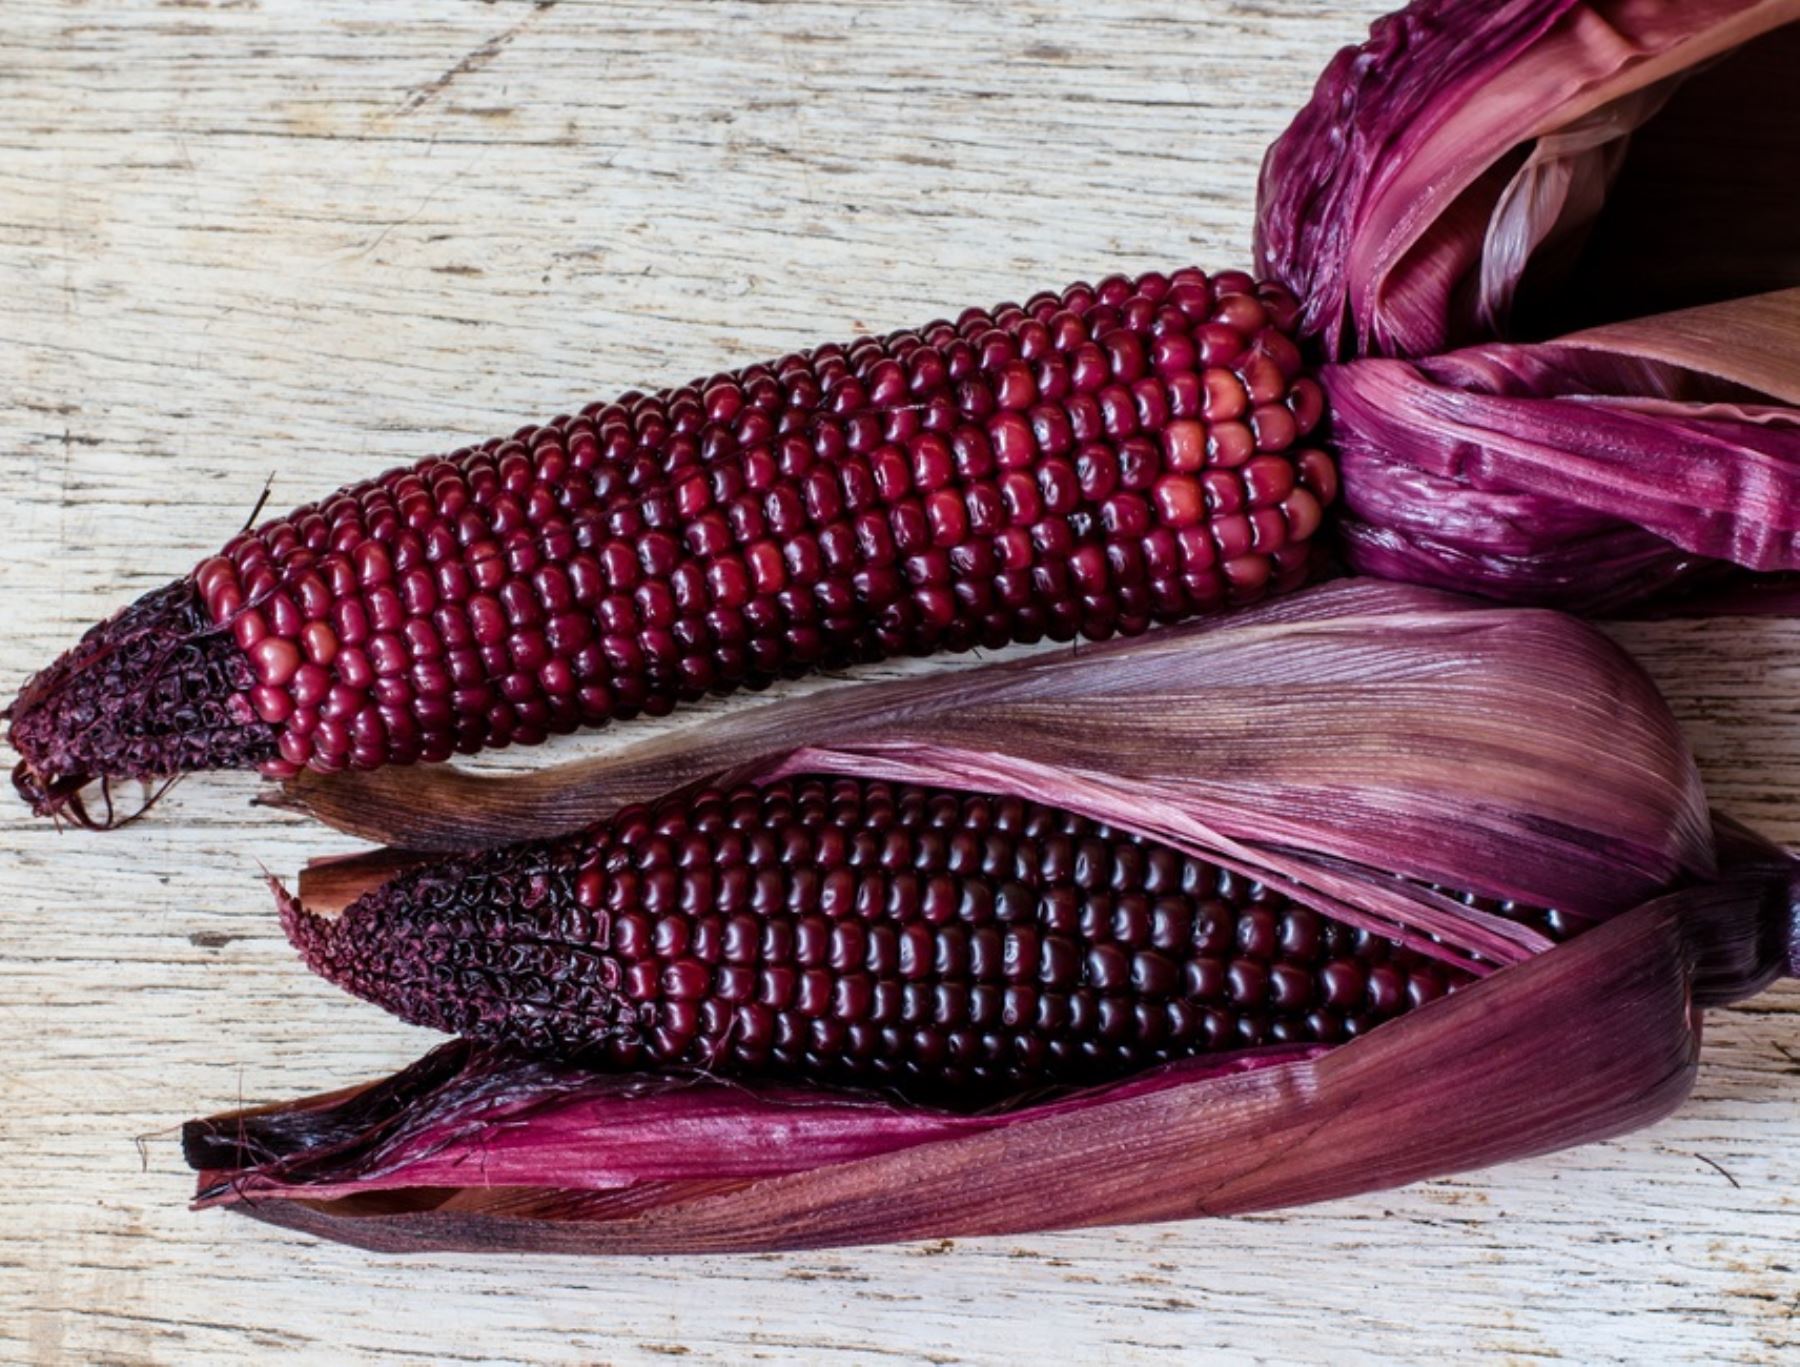 Investigadores de la Universidad Nacional Agraria La Molina desarrollan una nueva variedad de maíz morado, ideal para producir pop corn, rica en antioxidantes.